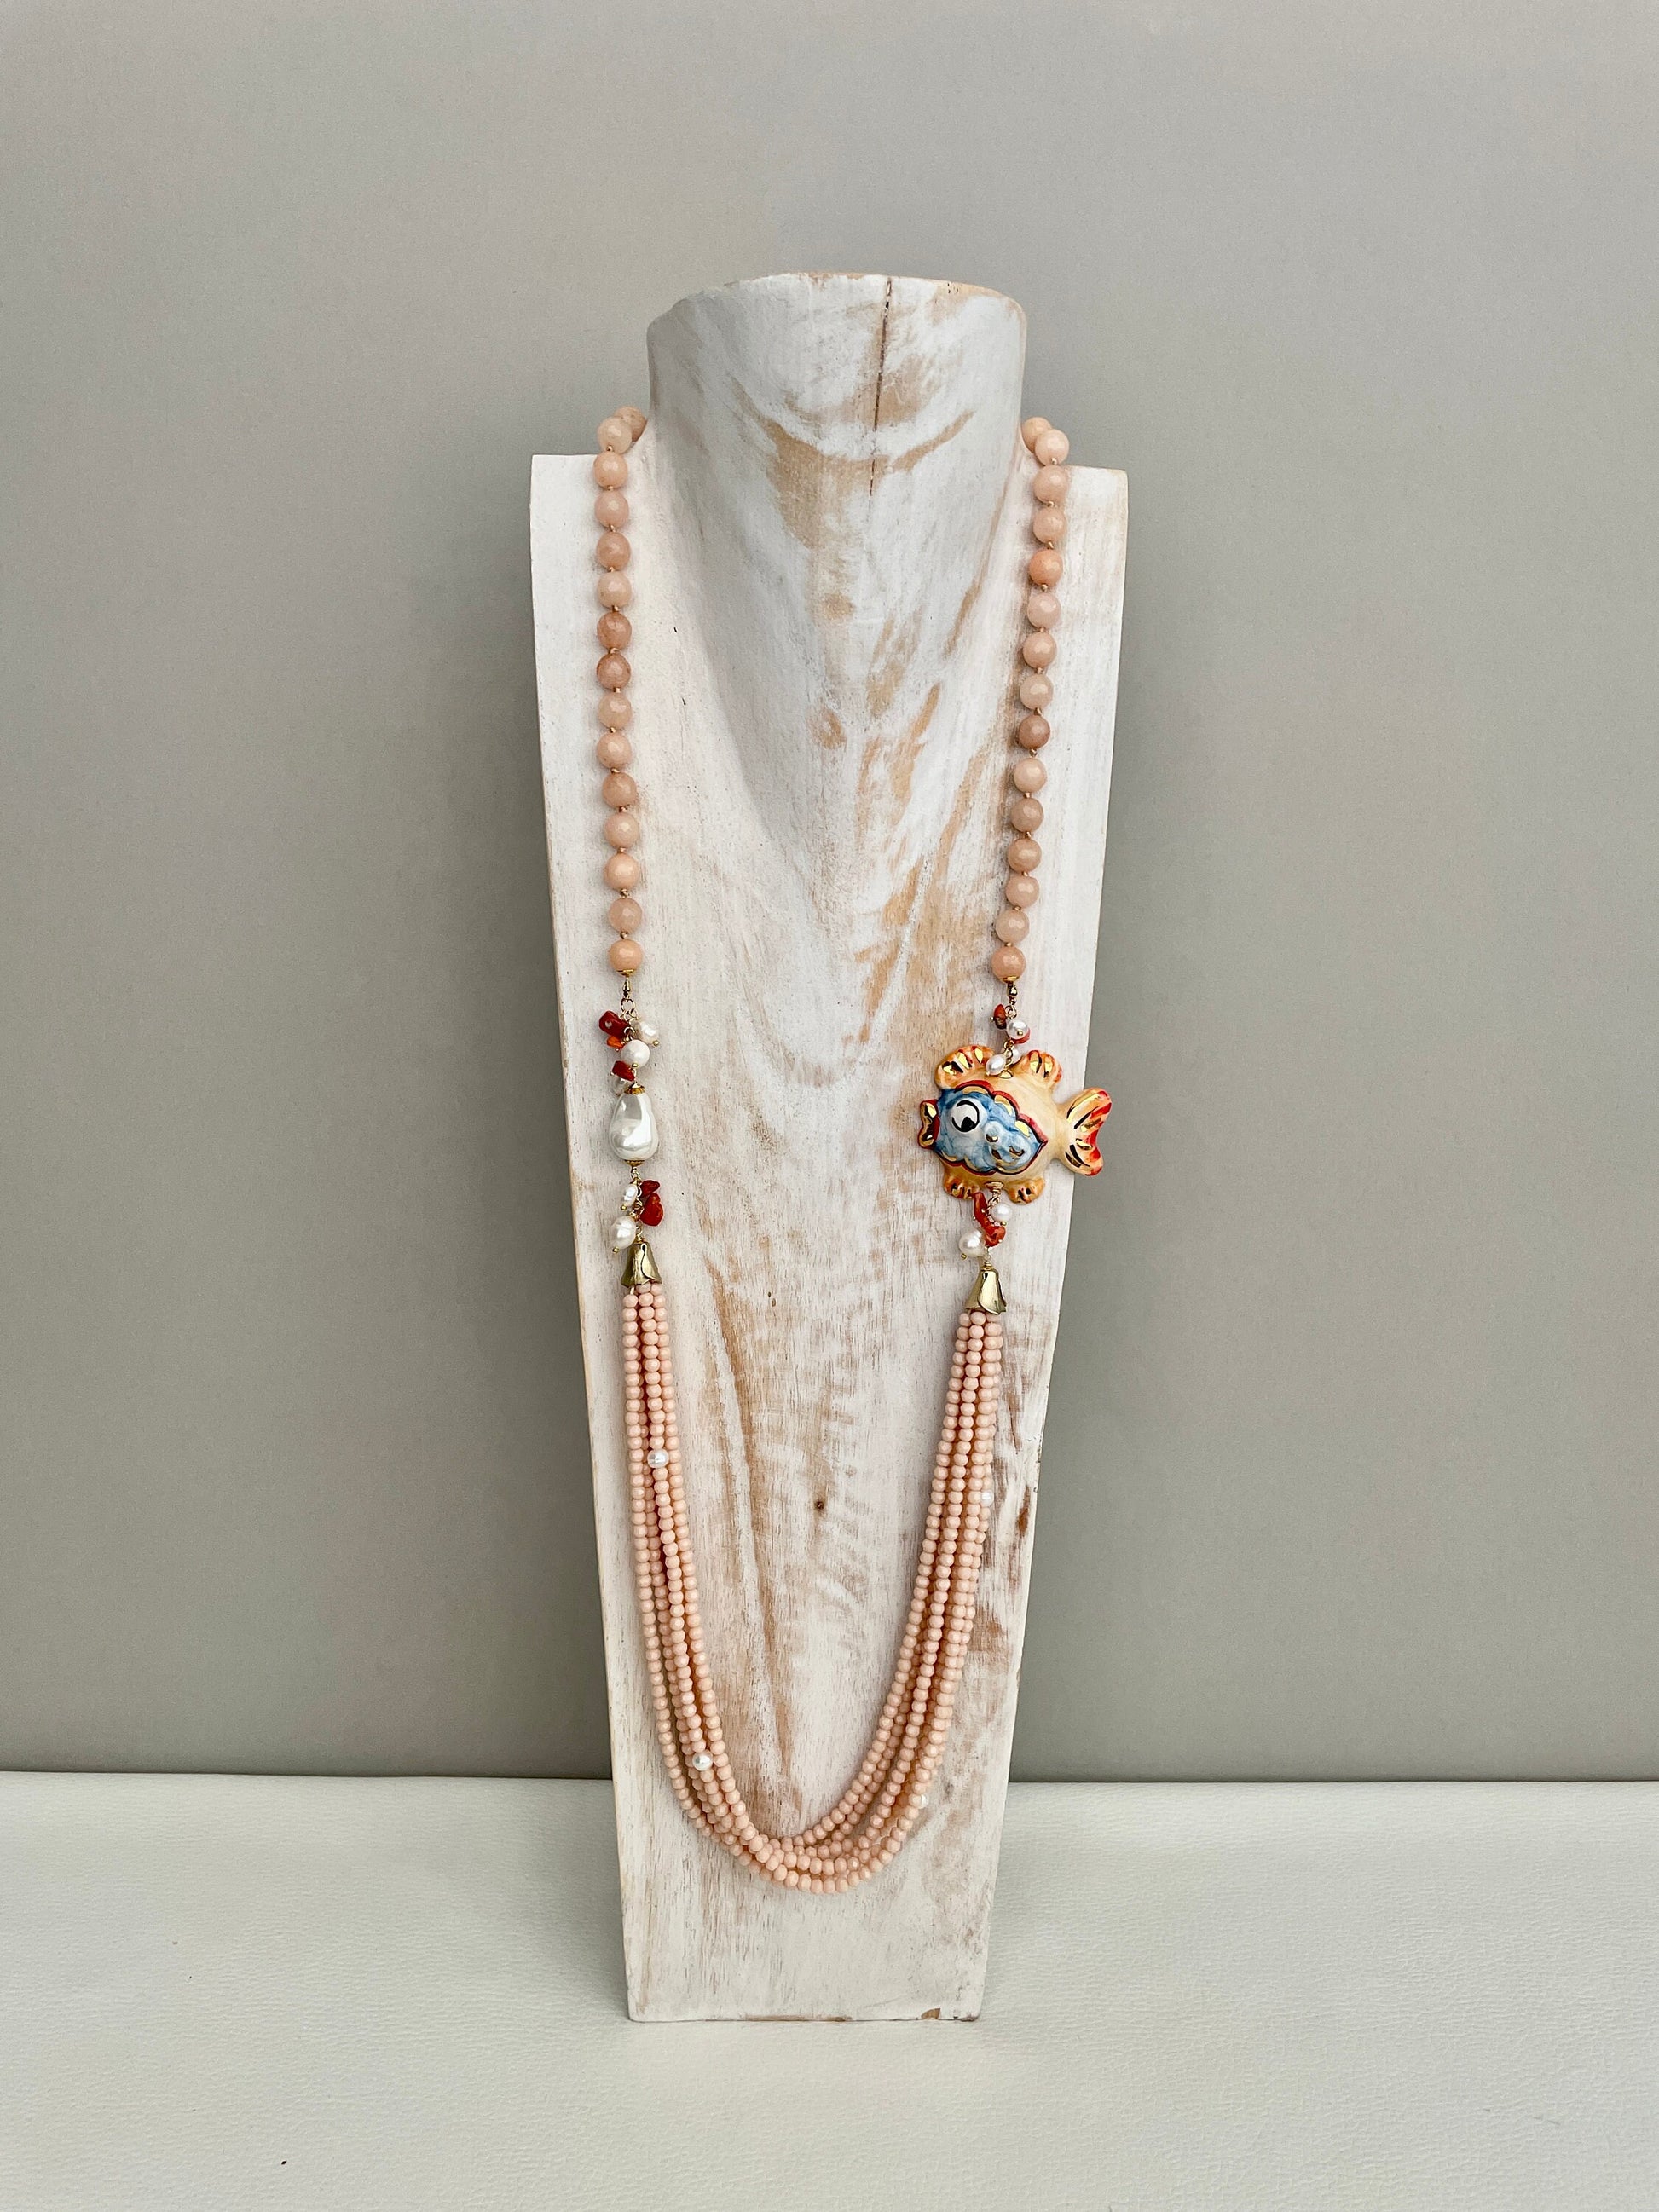 Collana siciliana, collana rosa chiaro, collana con pesce di ceramica di Caltagirone, collana pietre naturali e cristalli, collana lunga. ç